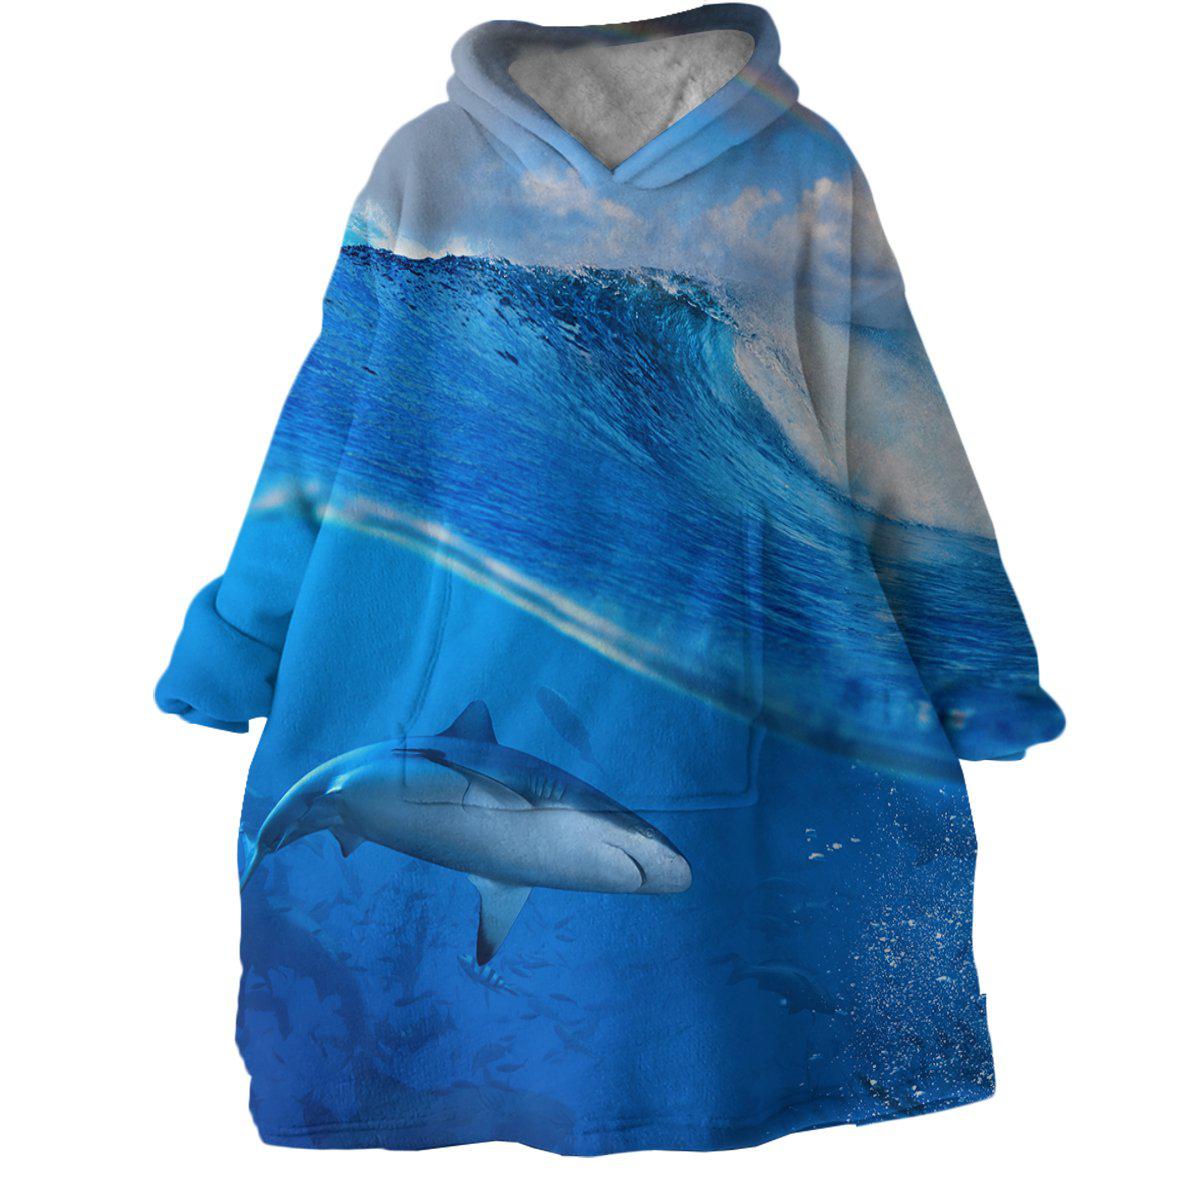 The Shark Wearable Blanket Hoodie